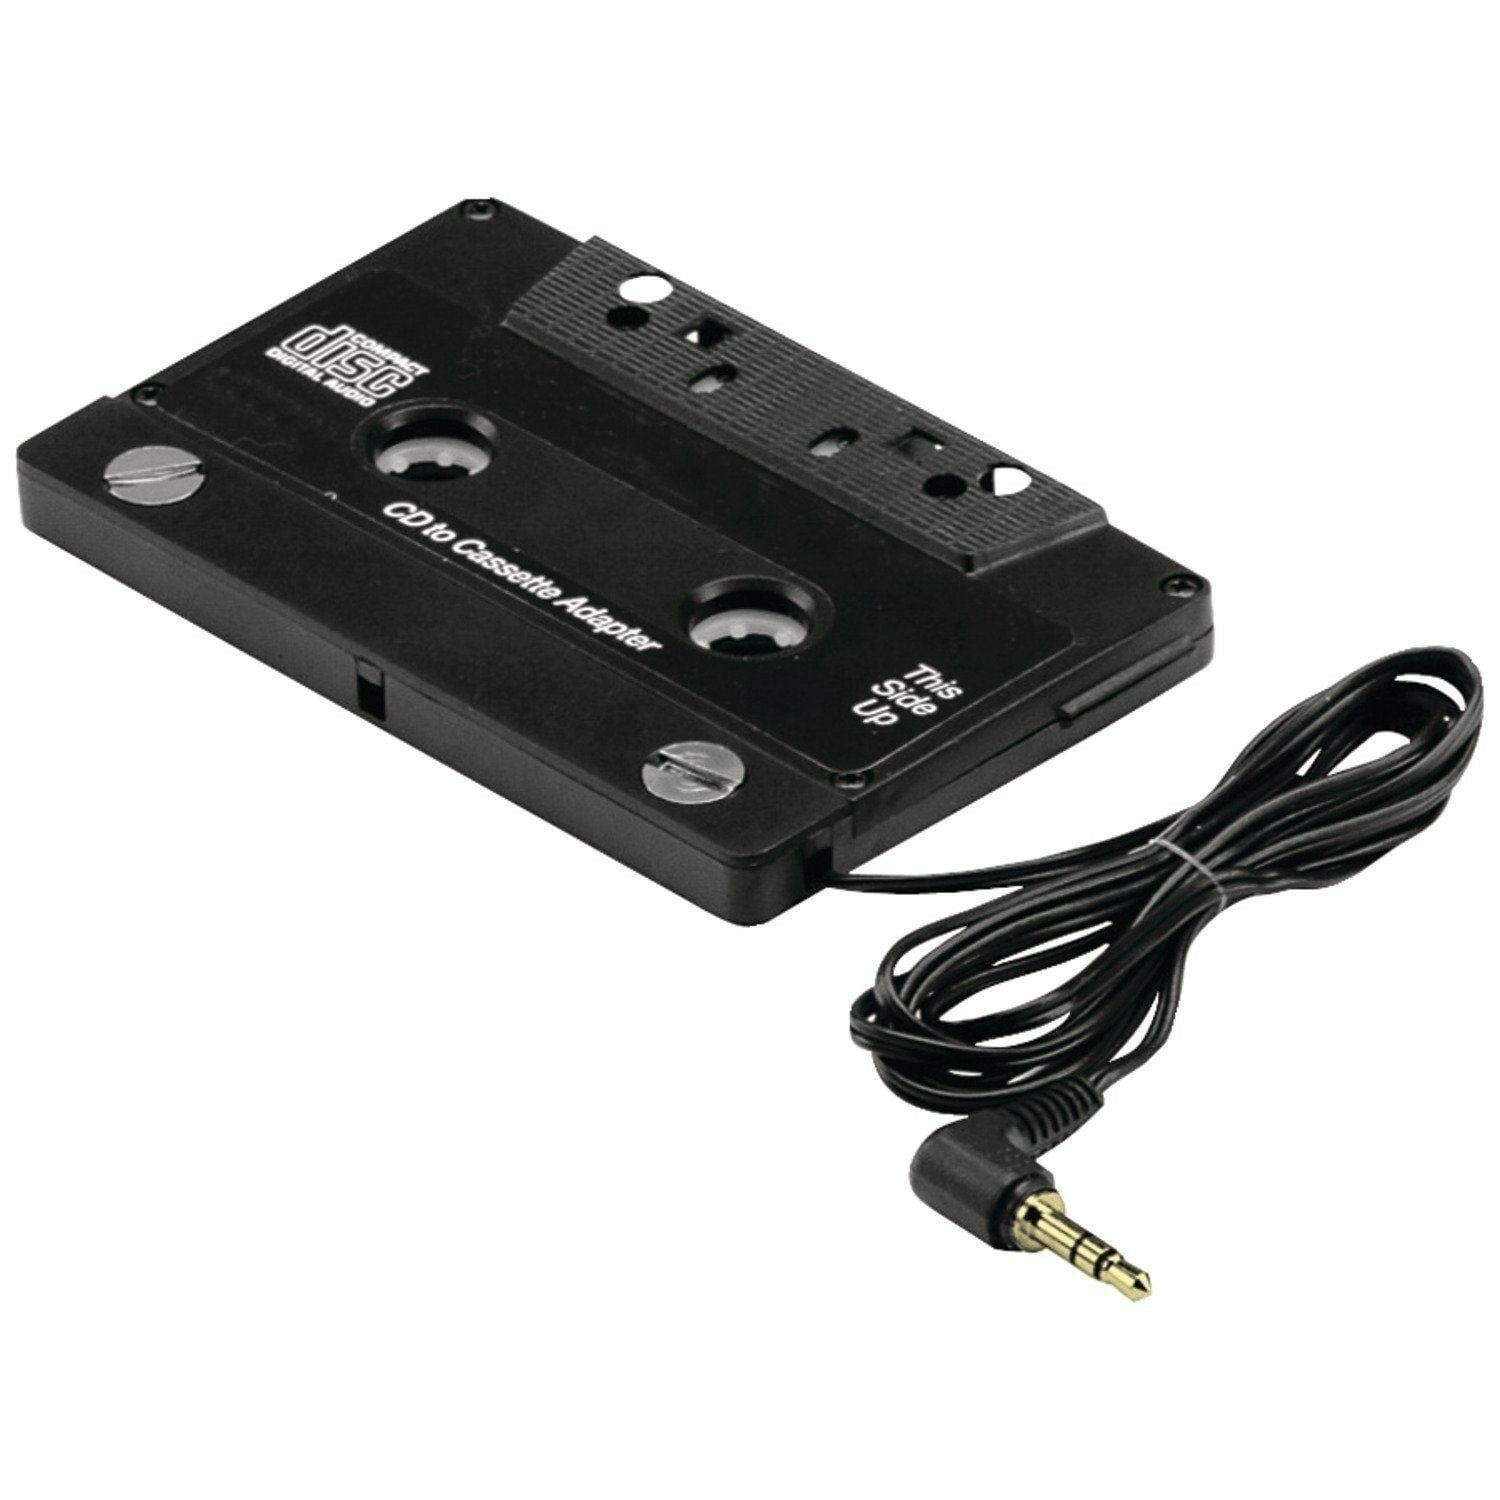 Adaptateur voiture 12v auto cassette cd/mp3/md lecteur cd ipd cassette10  dvd mp3 ipod nano clp 003